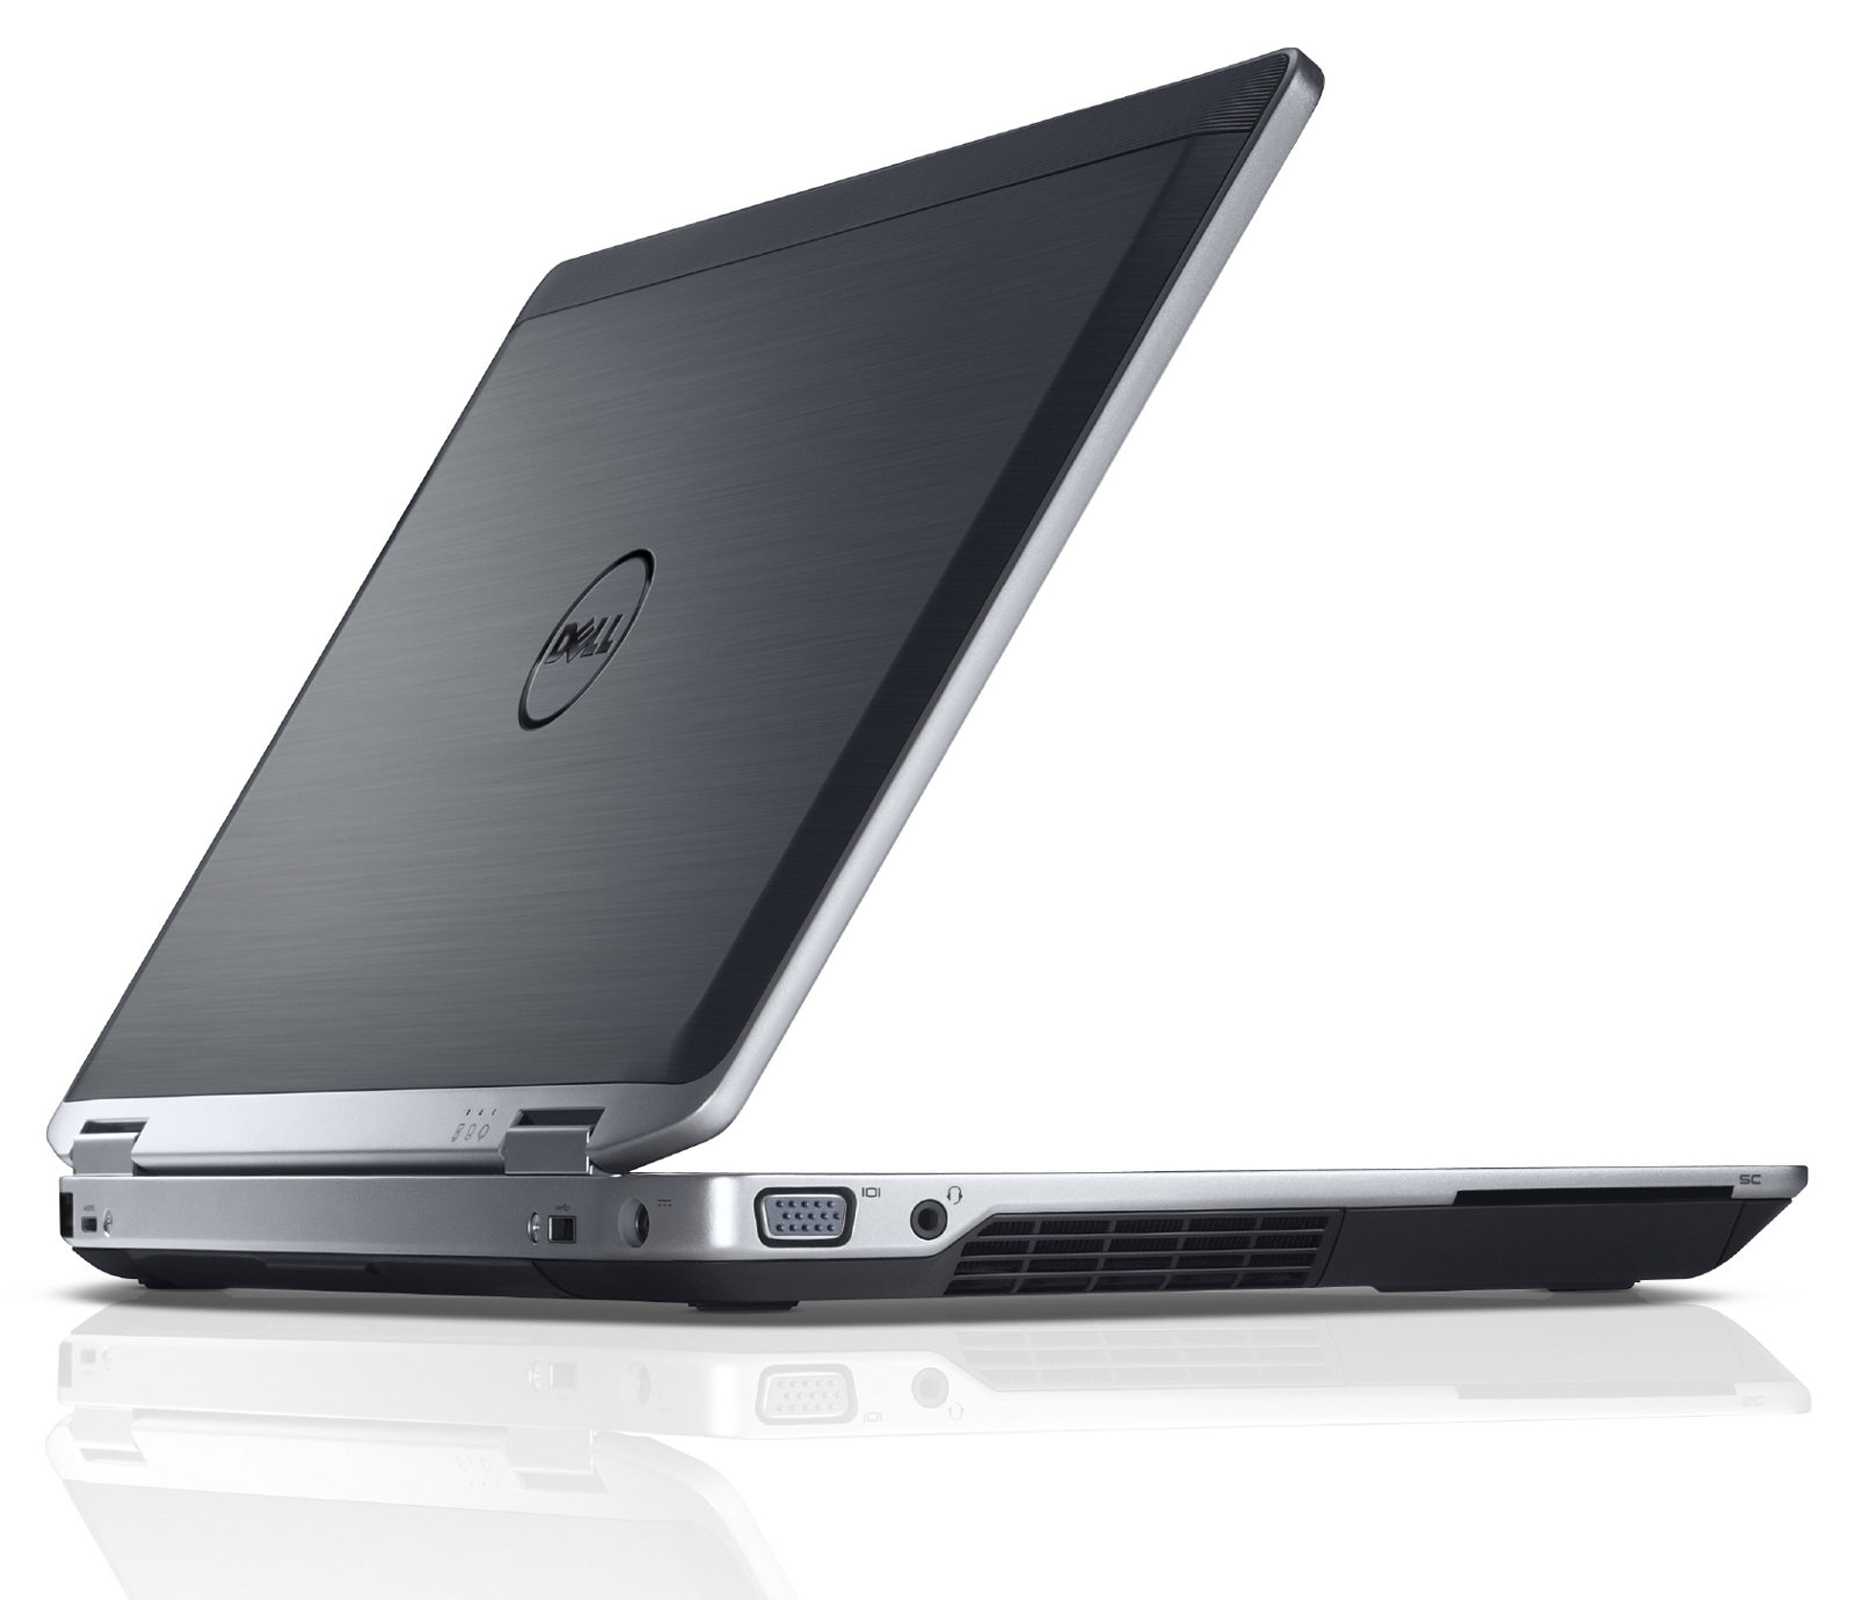 Ноутбук Dell Latitude E6330 (L016330105E-1) - подробные характеристики обзоры видео фото Цены в интернет-магазинах где можно купить ноутбук Dell Latitude E6330 (L016330105E-1)